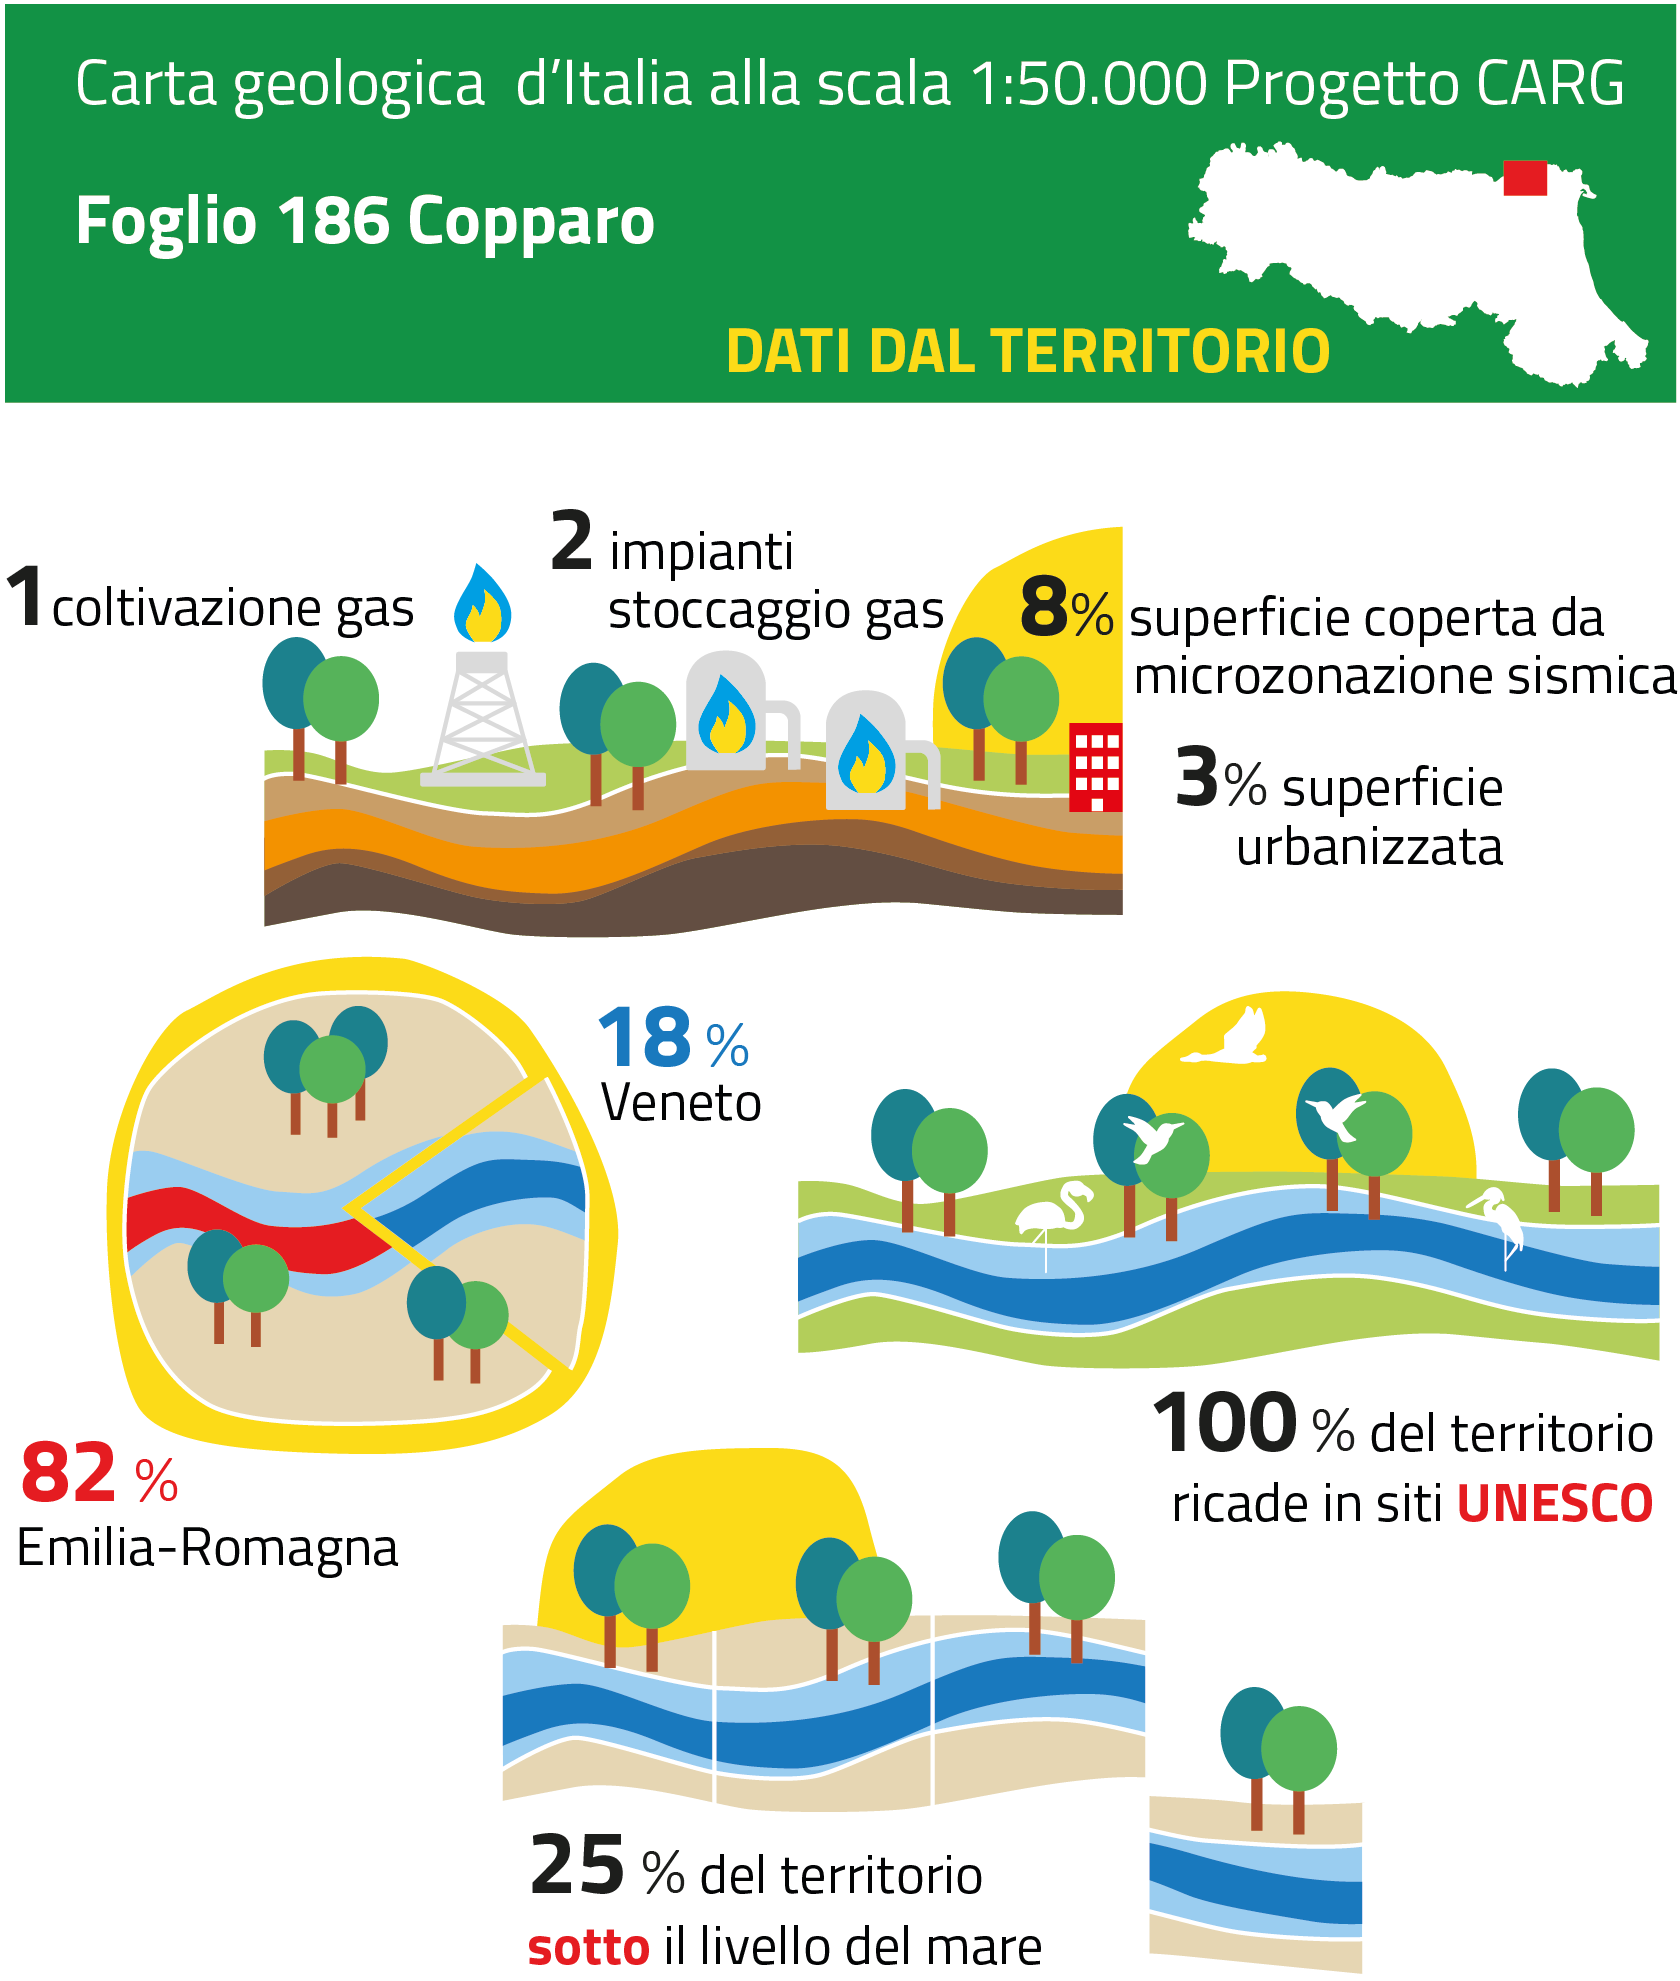 Dati dal territorio - Foglio 186 Copparo